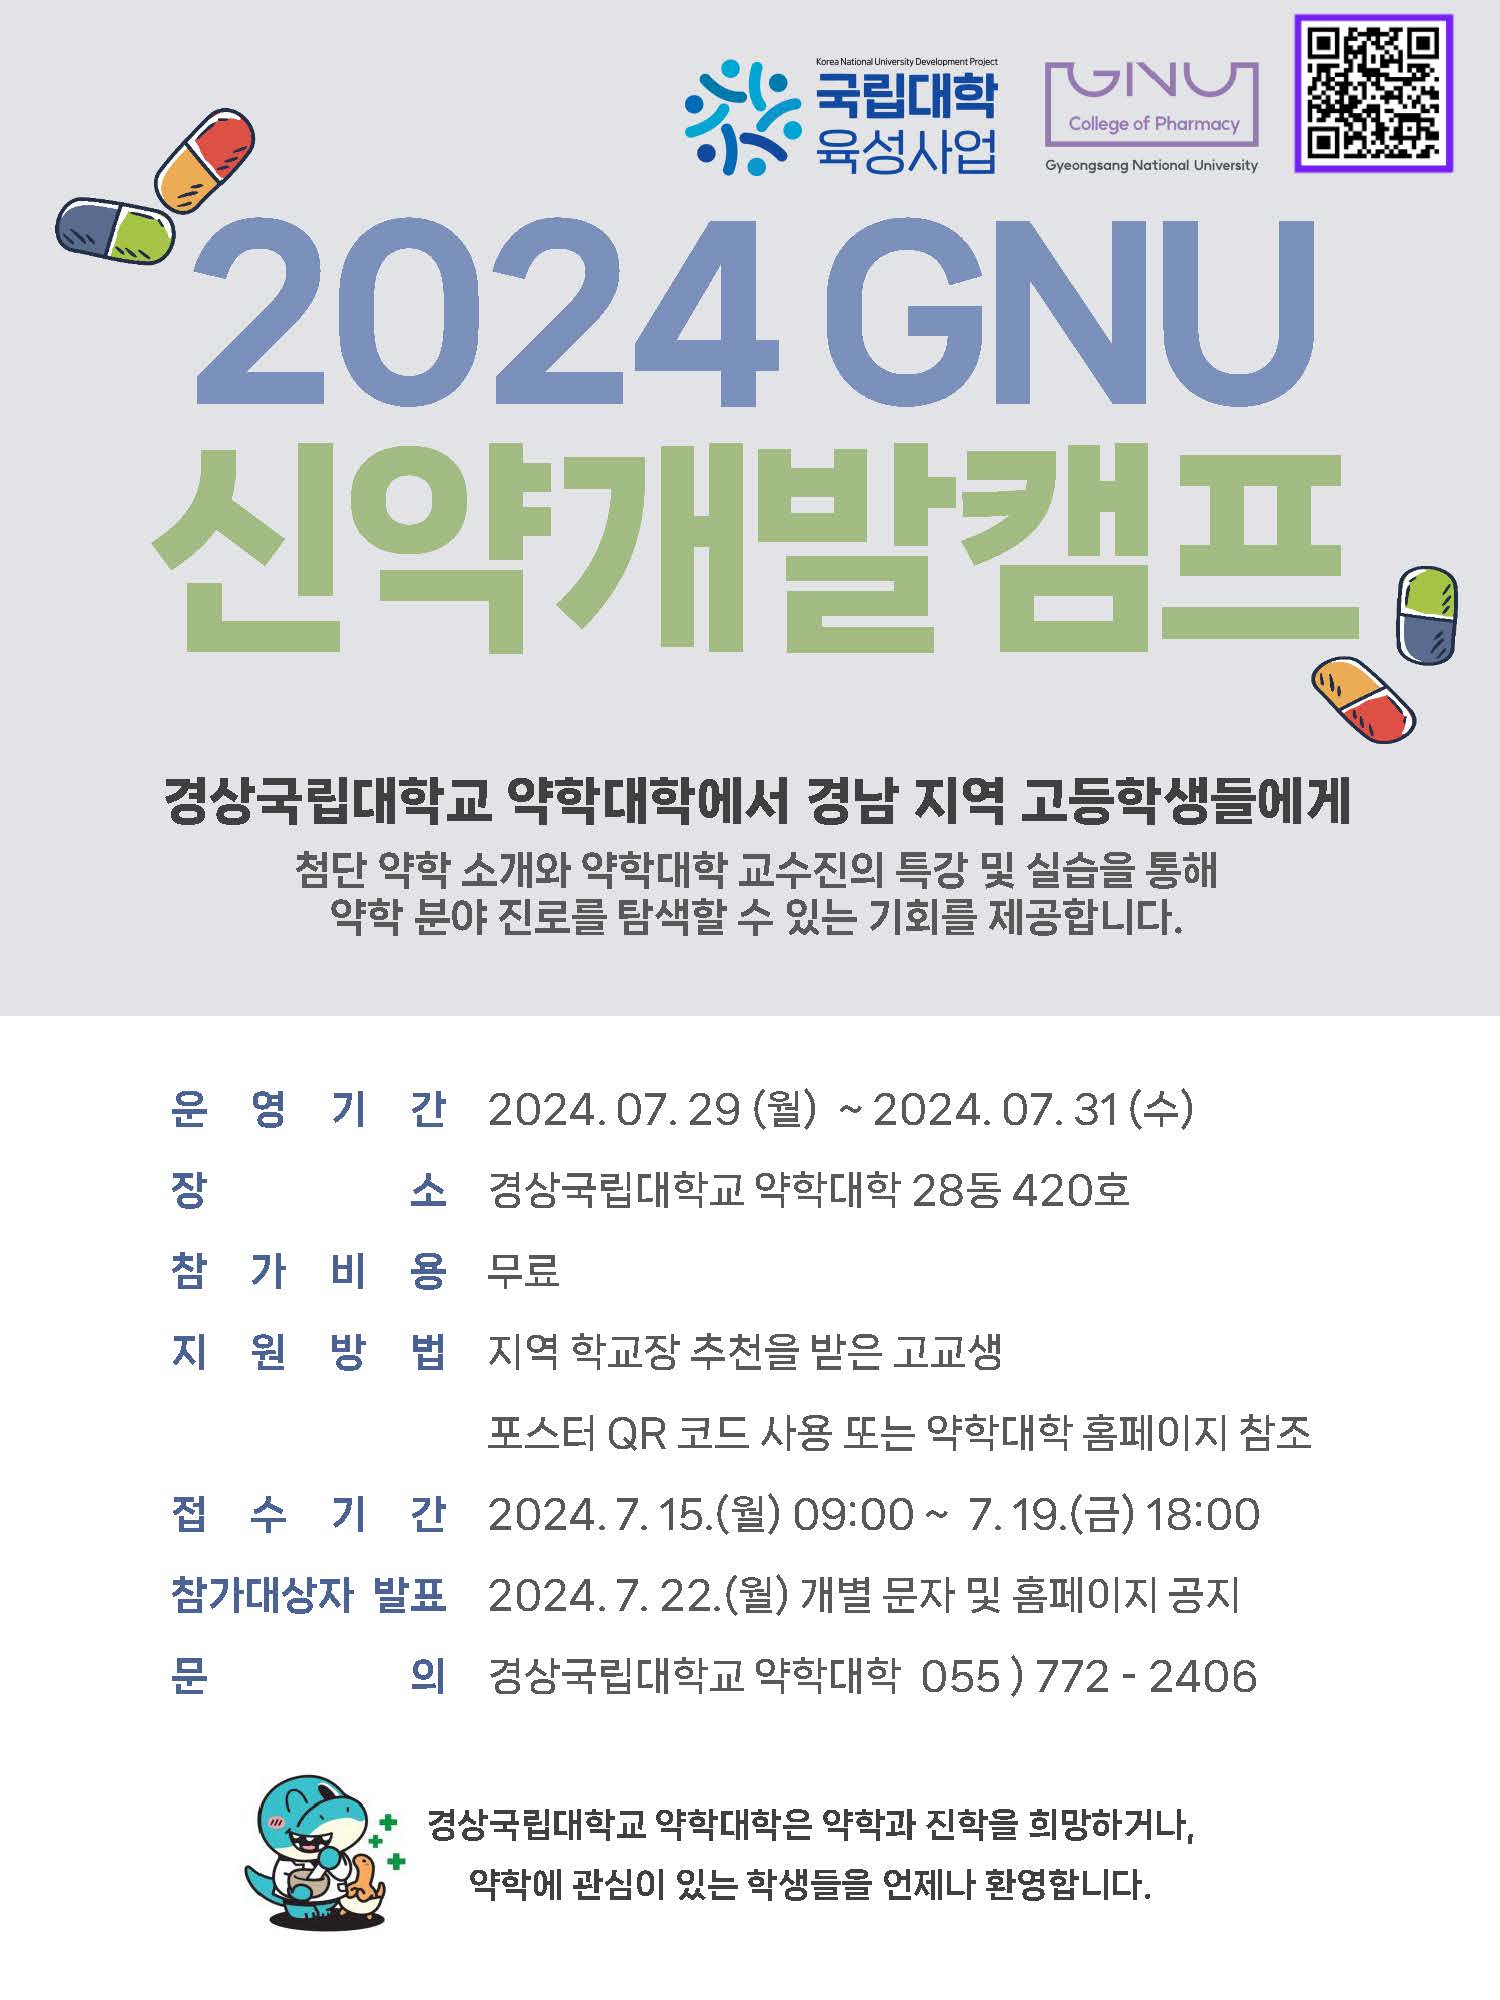 2024 GNU 신약개발캠프